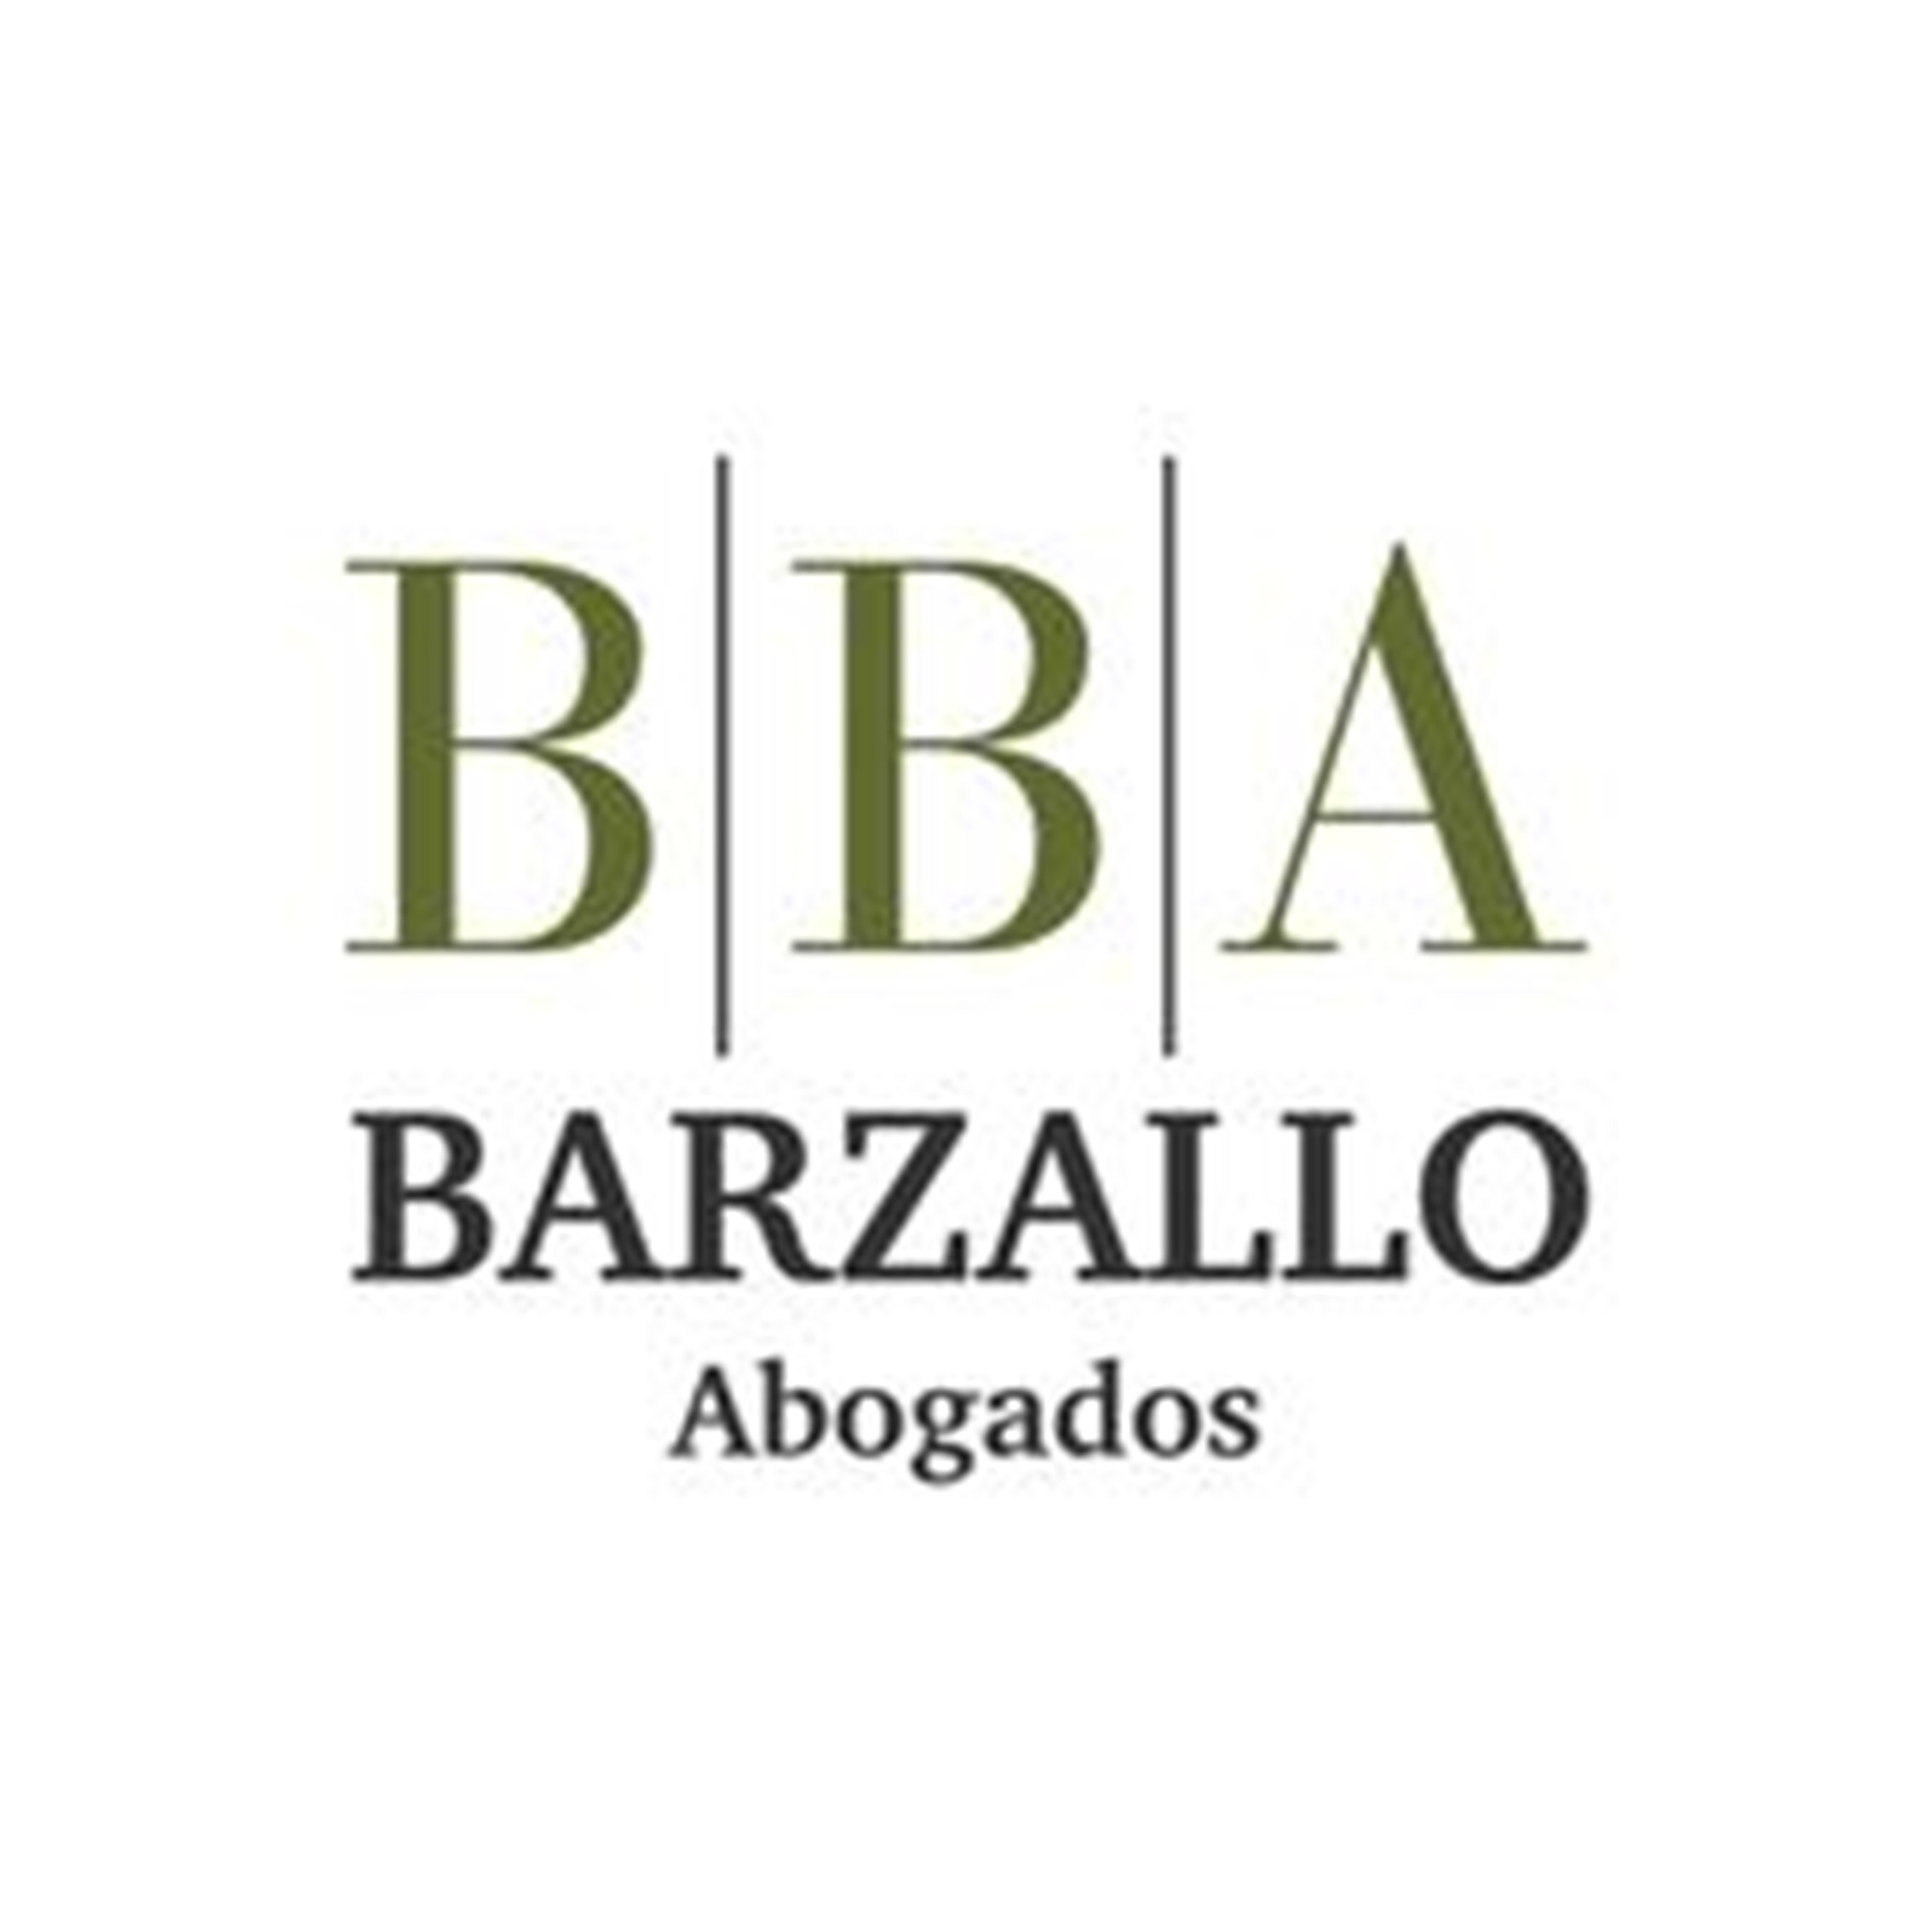  Barzallo & Barzallo Abogados